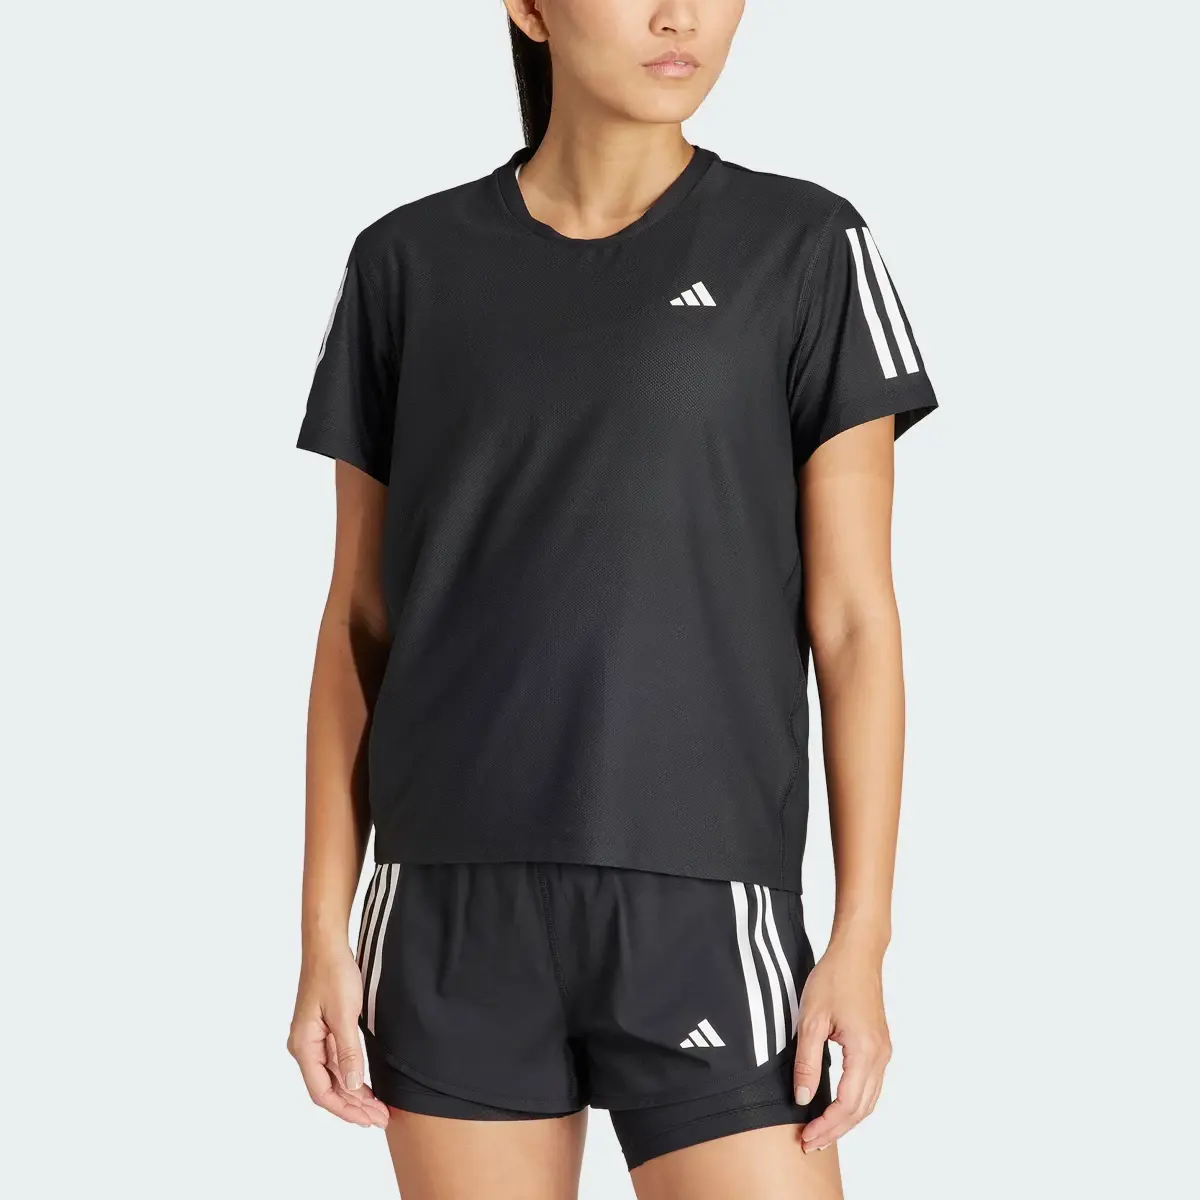 Adidas Own The Run T-Shirt. 1